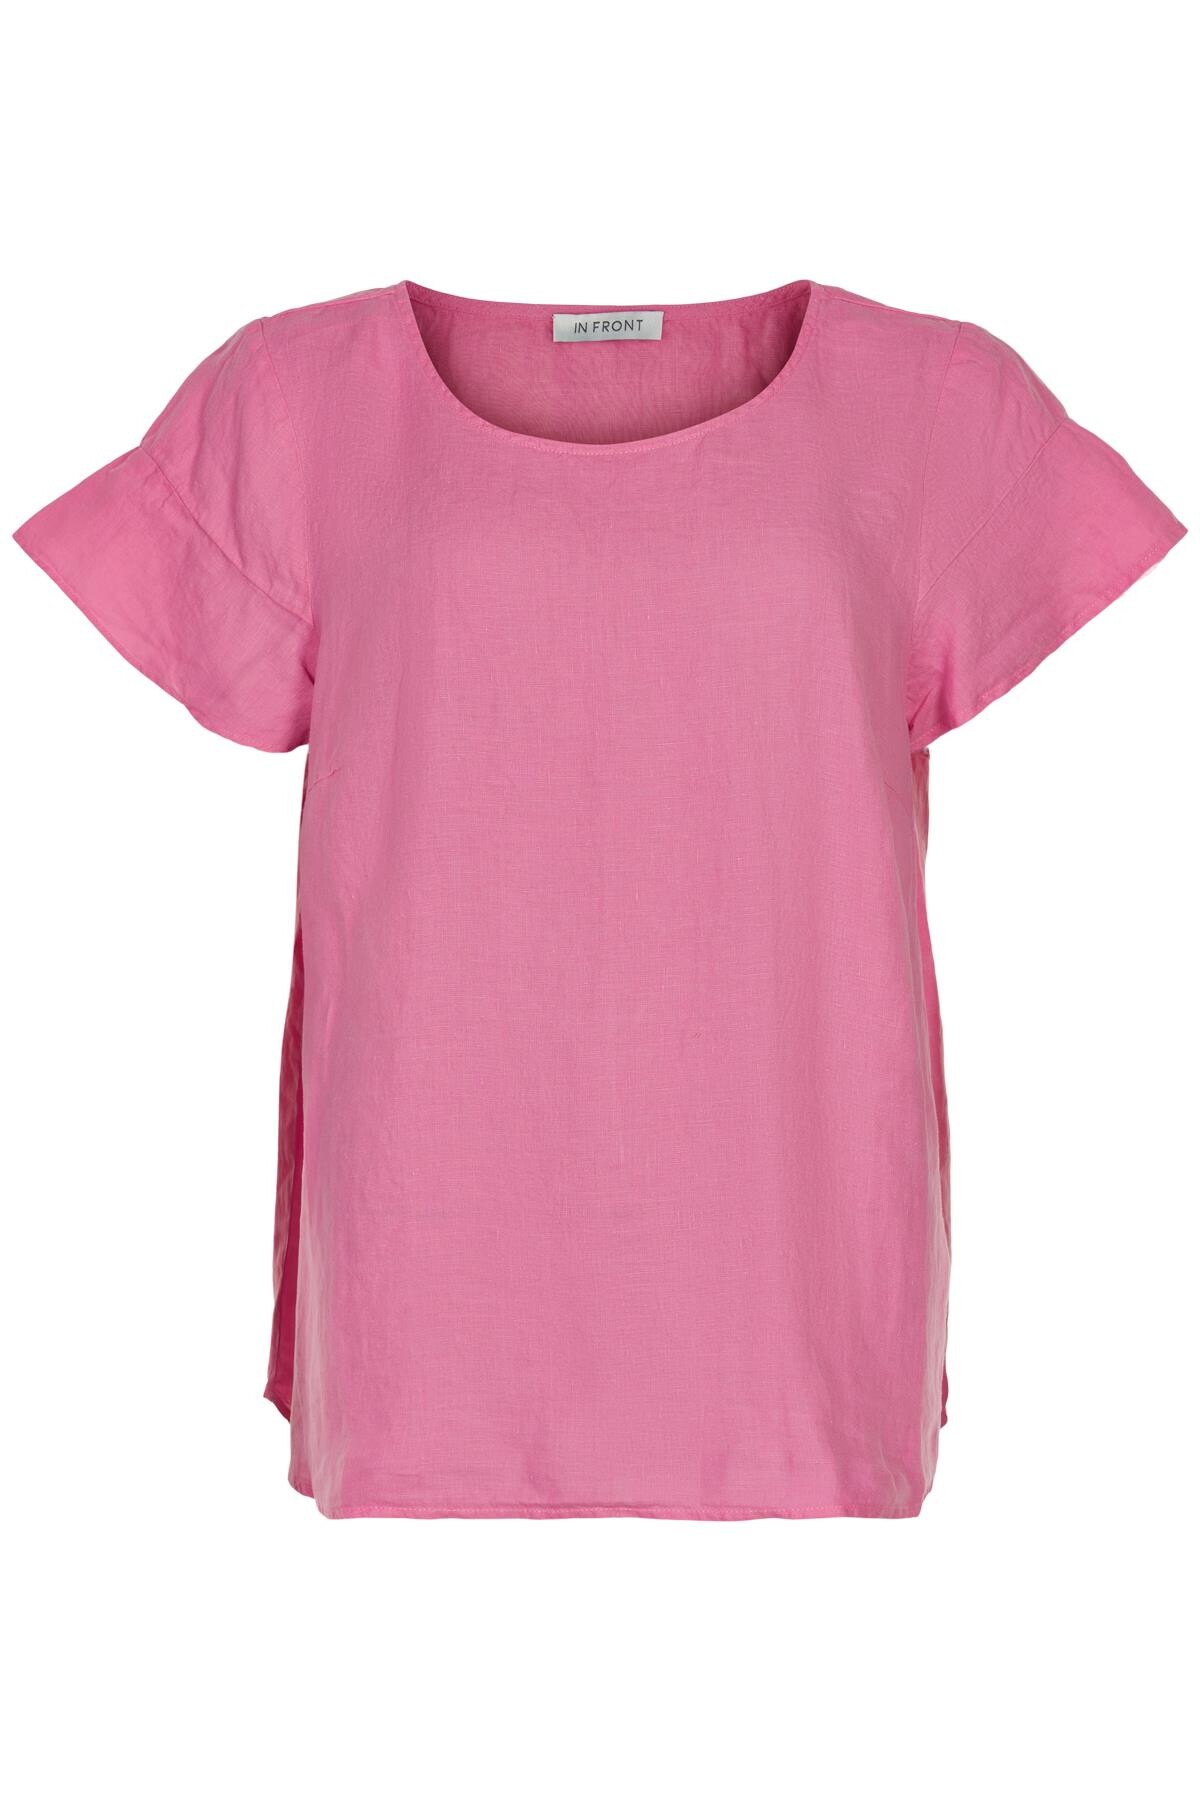 In Front Lino Bluse, Farve: Pink, Størrelse: XL, Dame